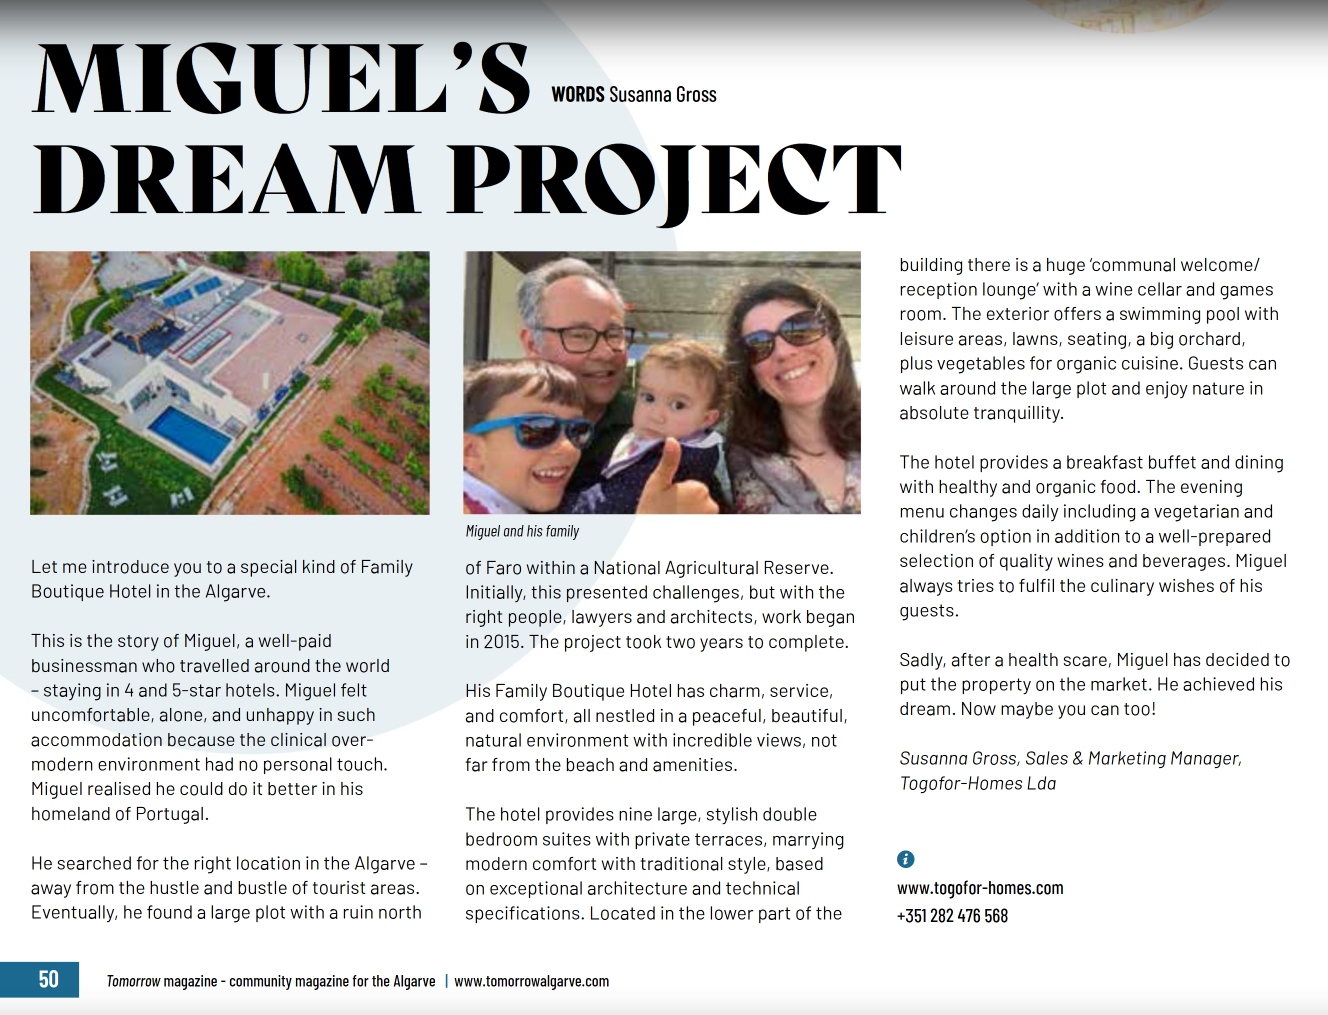 Artigo Tomorrow Algarve - O Projeto de Sonho do Miguel – Pode ser o seu Sonho